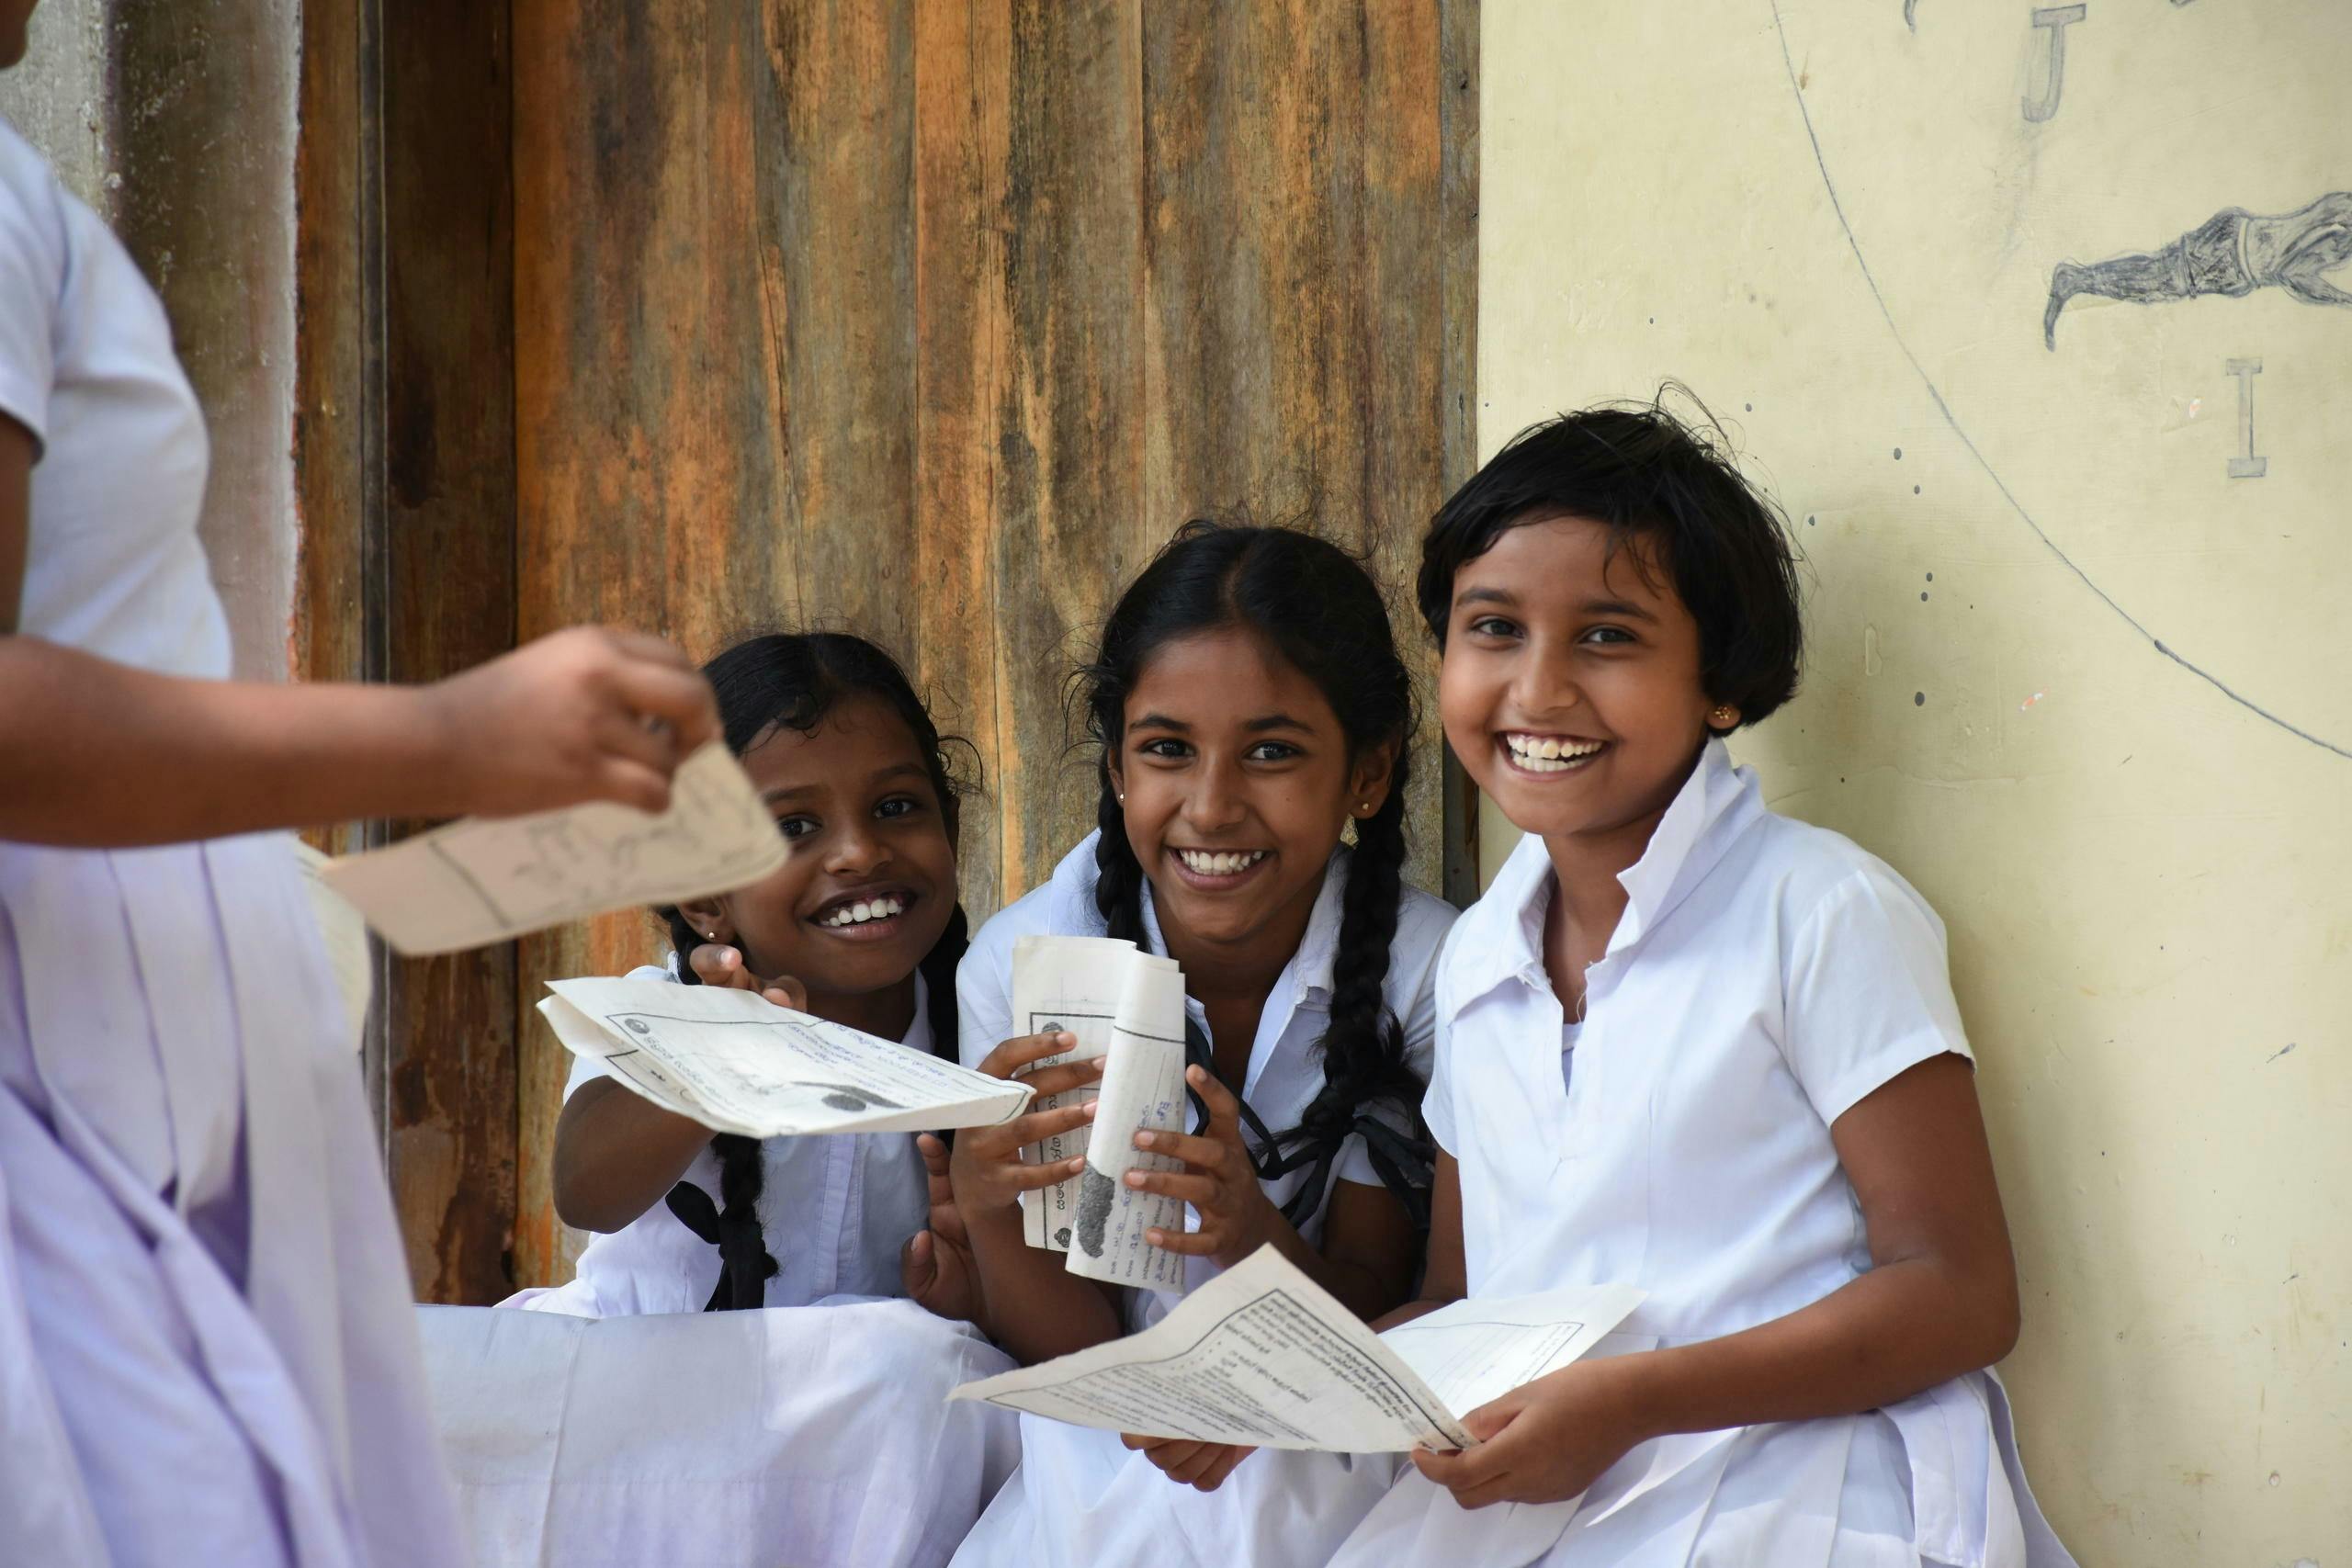 Trois jeunes filles souriantes, vêtues de leur uniforme scolaire blanc typique, rient face à la caméra. Elles tiennent du papier dans leurs mains et sont assises en plein air contre un mur.